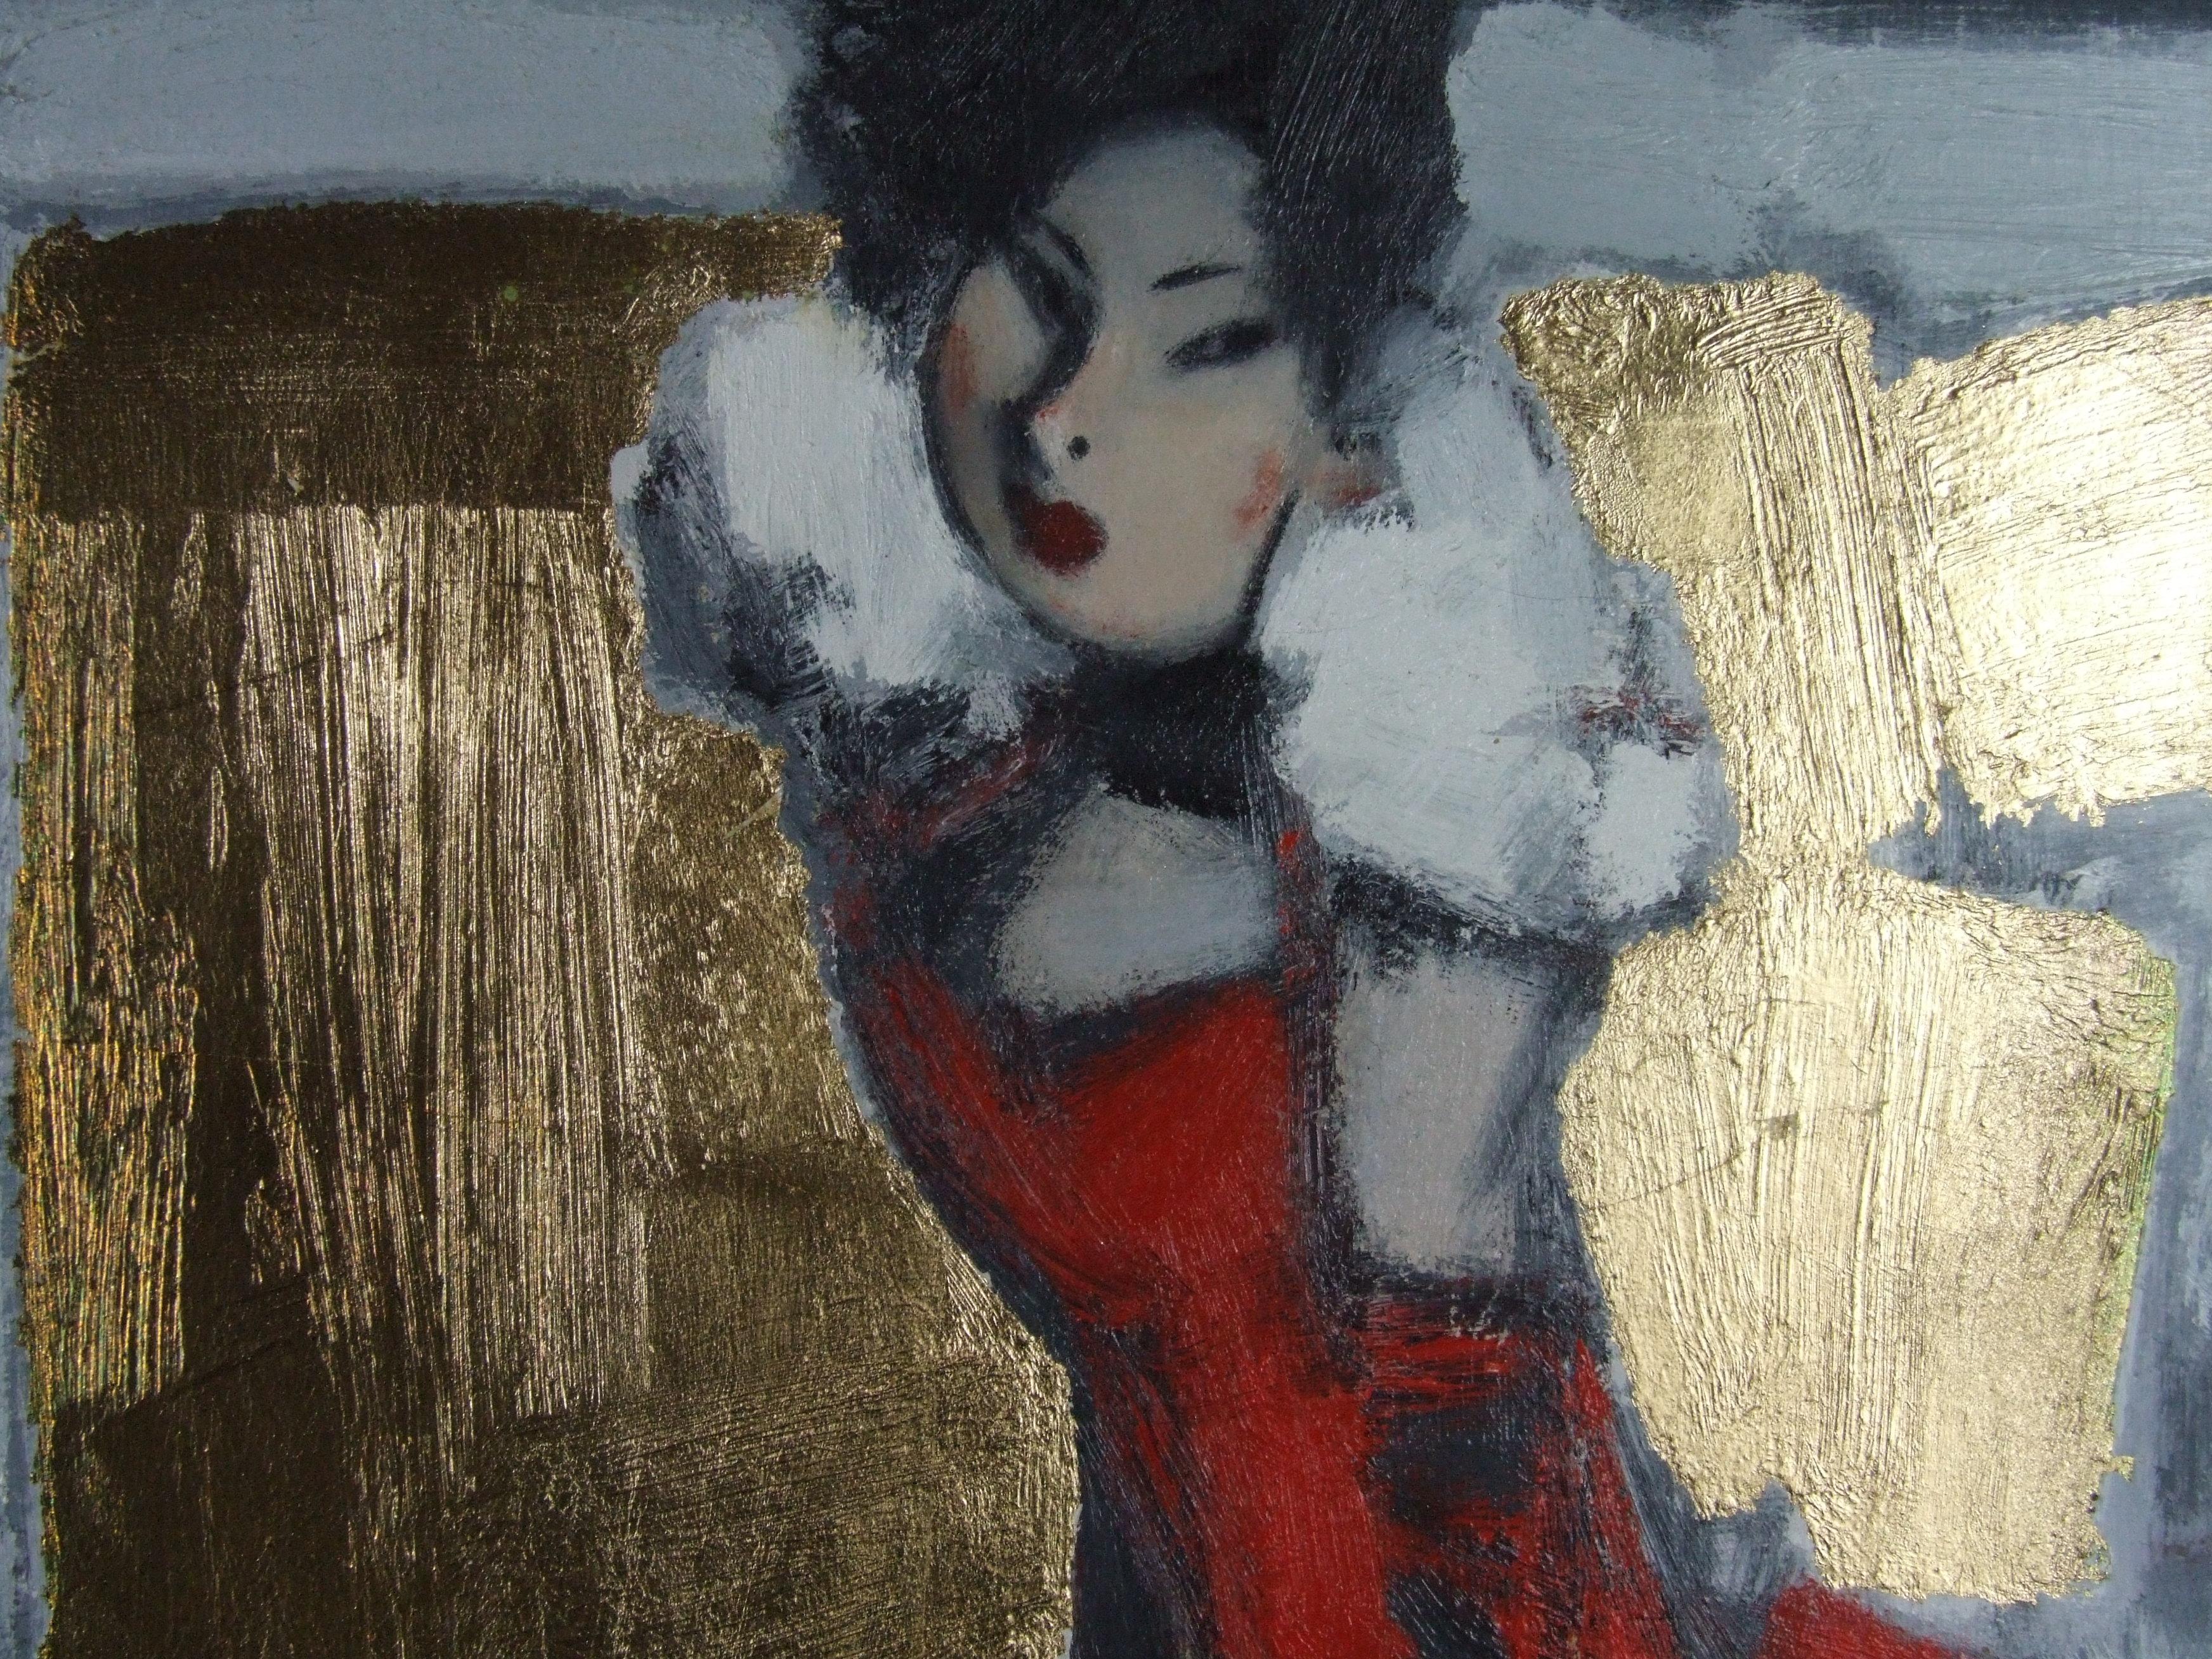 La robe rouge, 2006 - Huile sur toile, 60x50 cm. - Post-impressionnisme Painting par Smirnoff Andrej